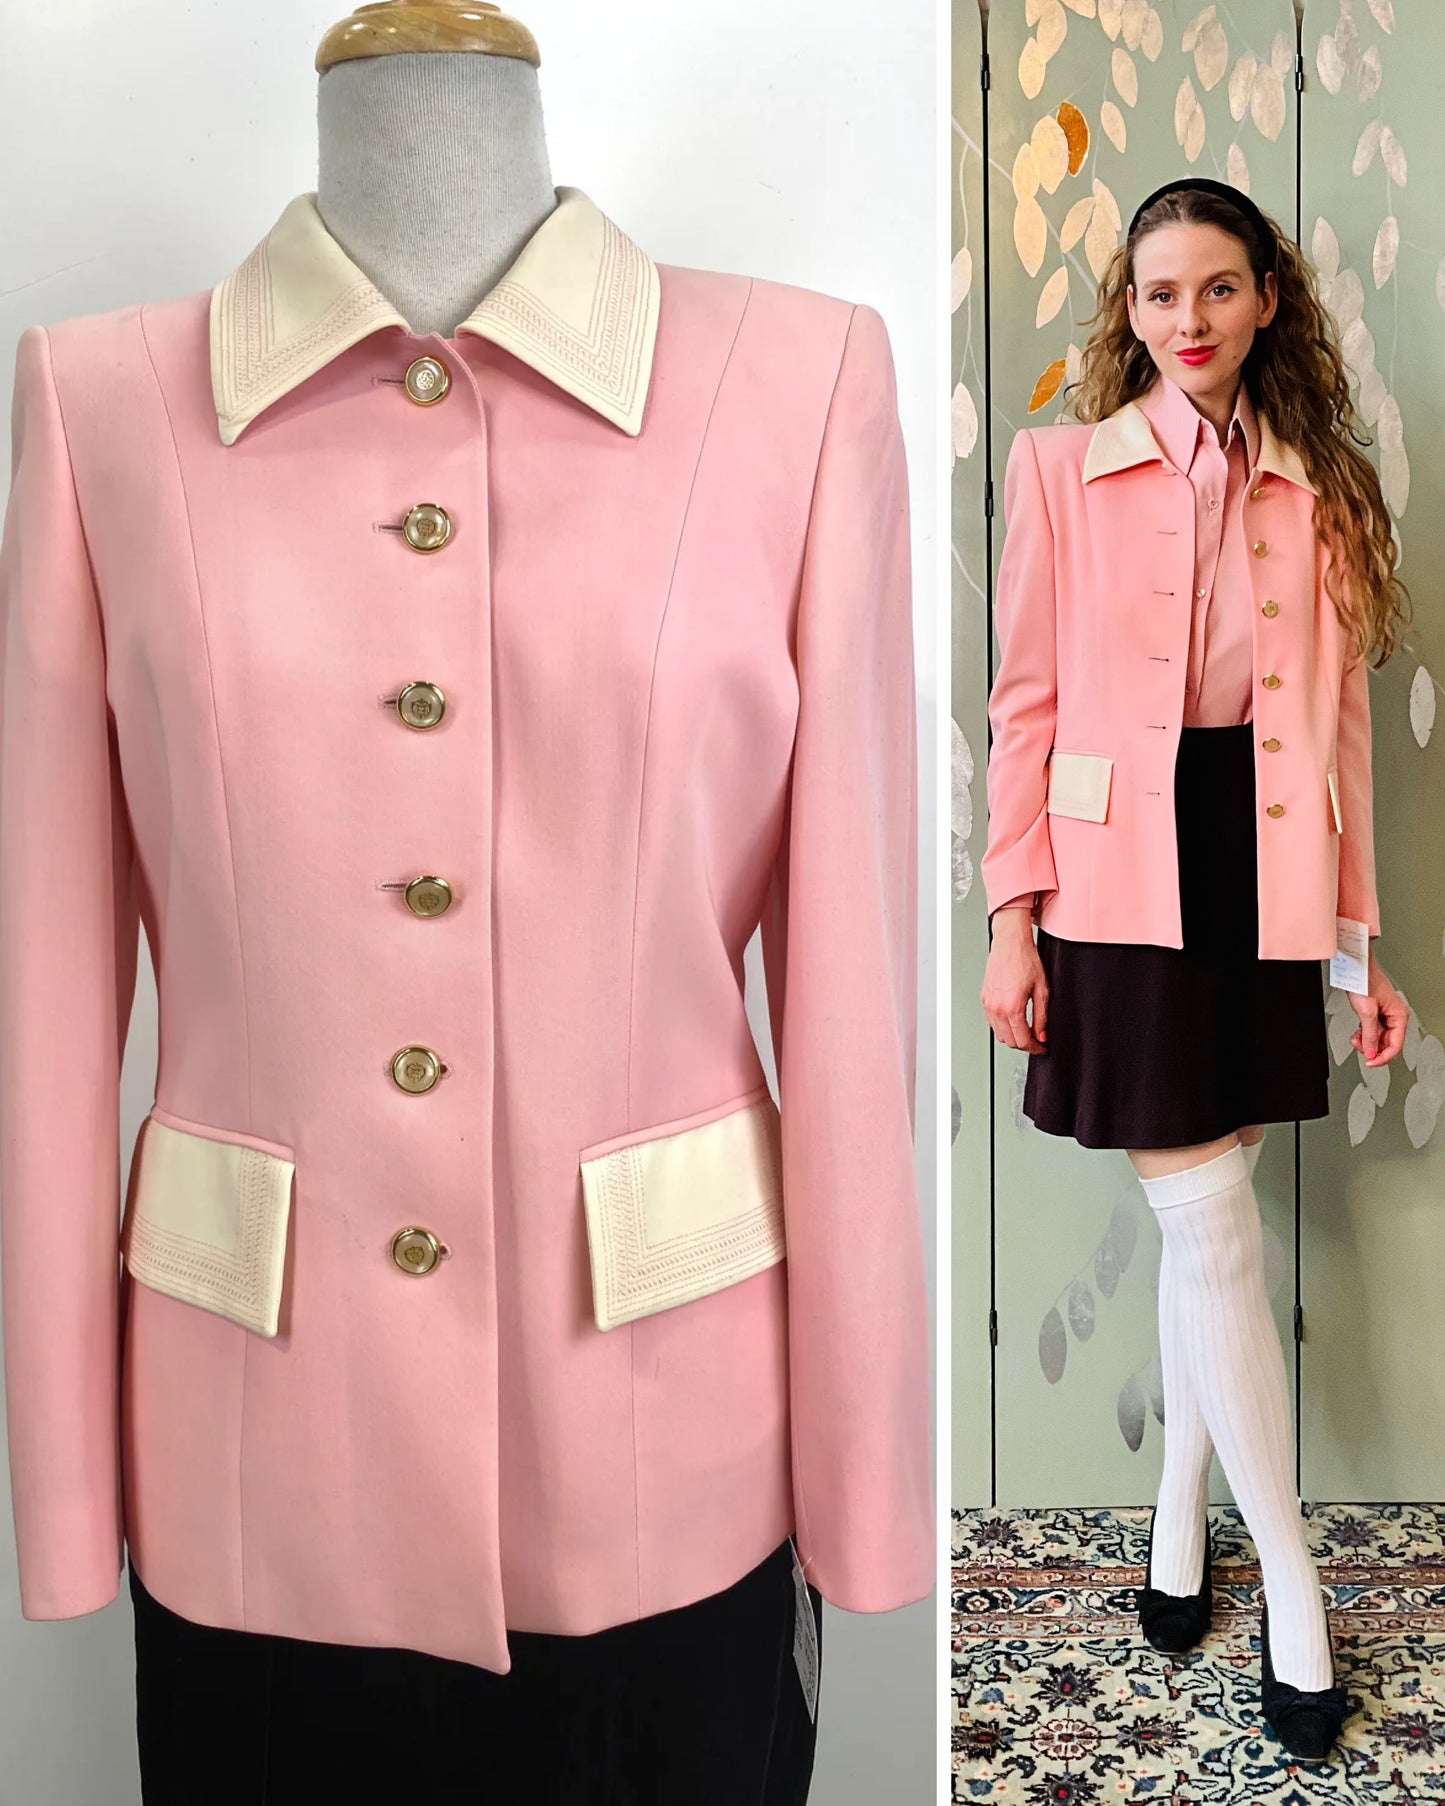 Vintage 1990s Pink/Cream Escada Blazer, Medium. Cher Horowitz Clueless style blazer. 